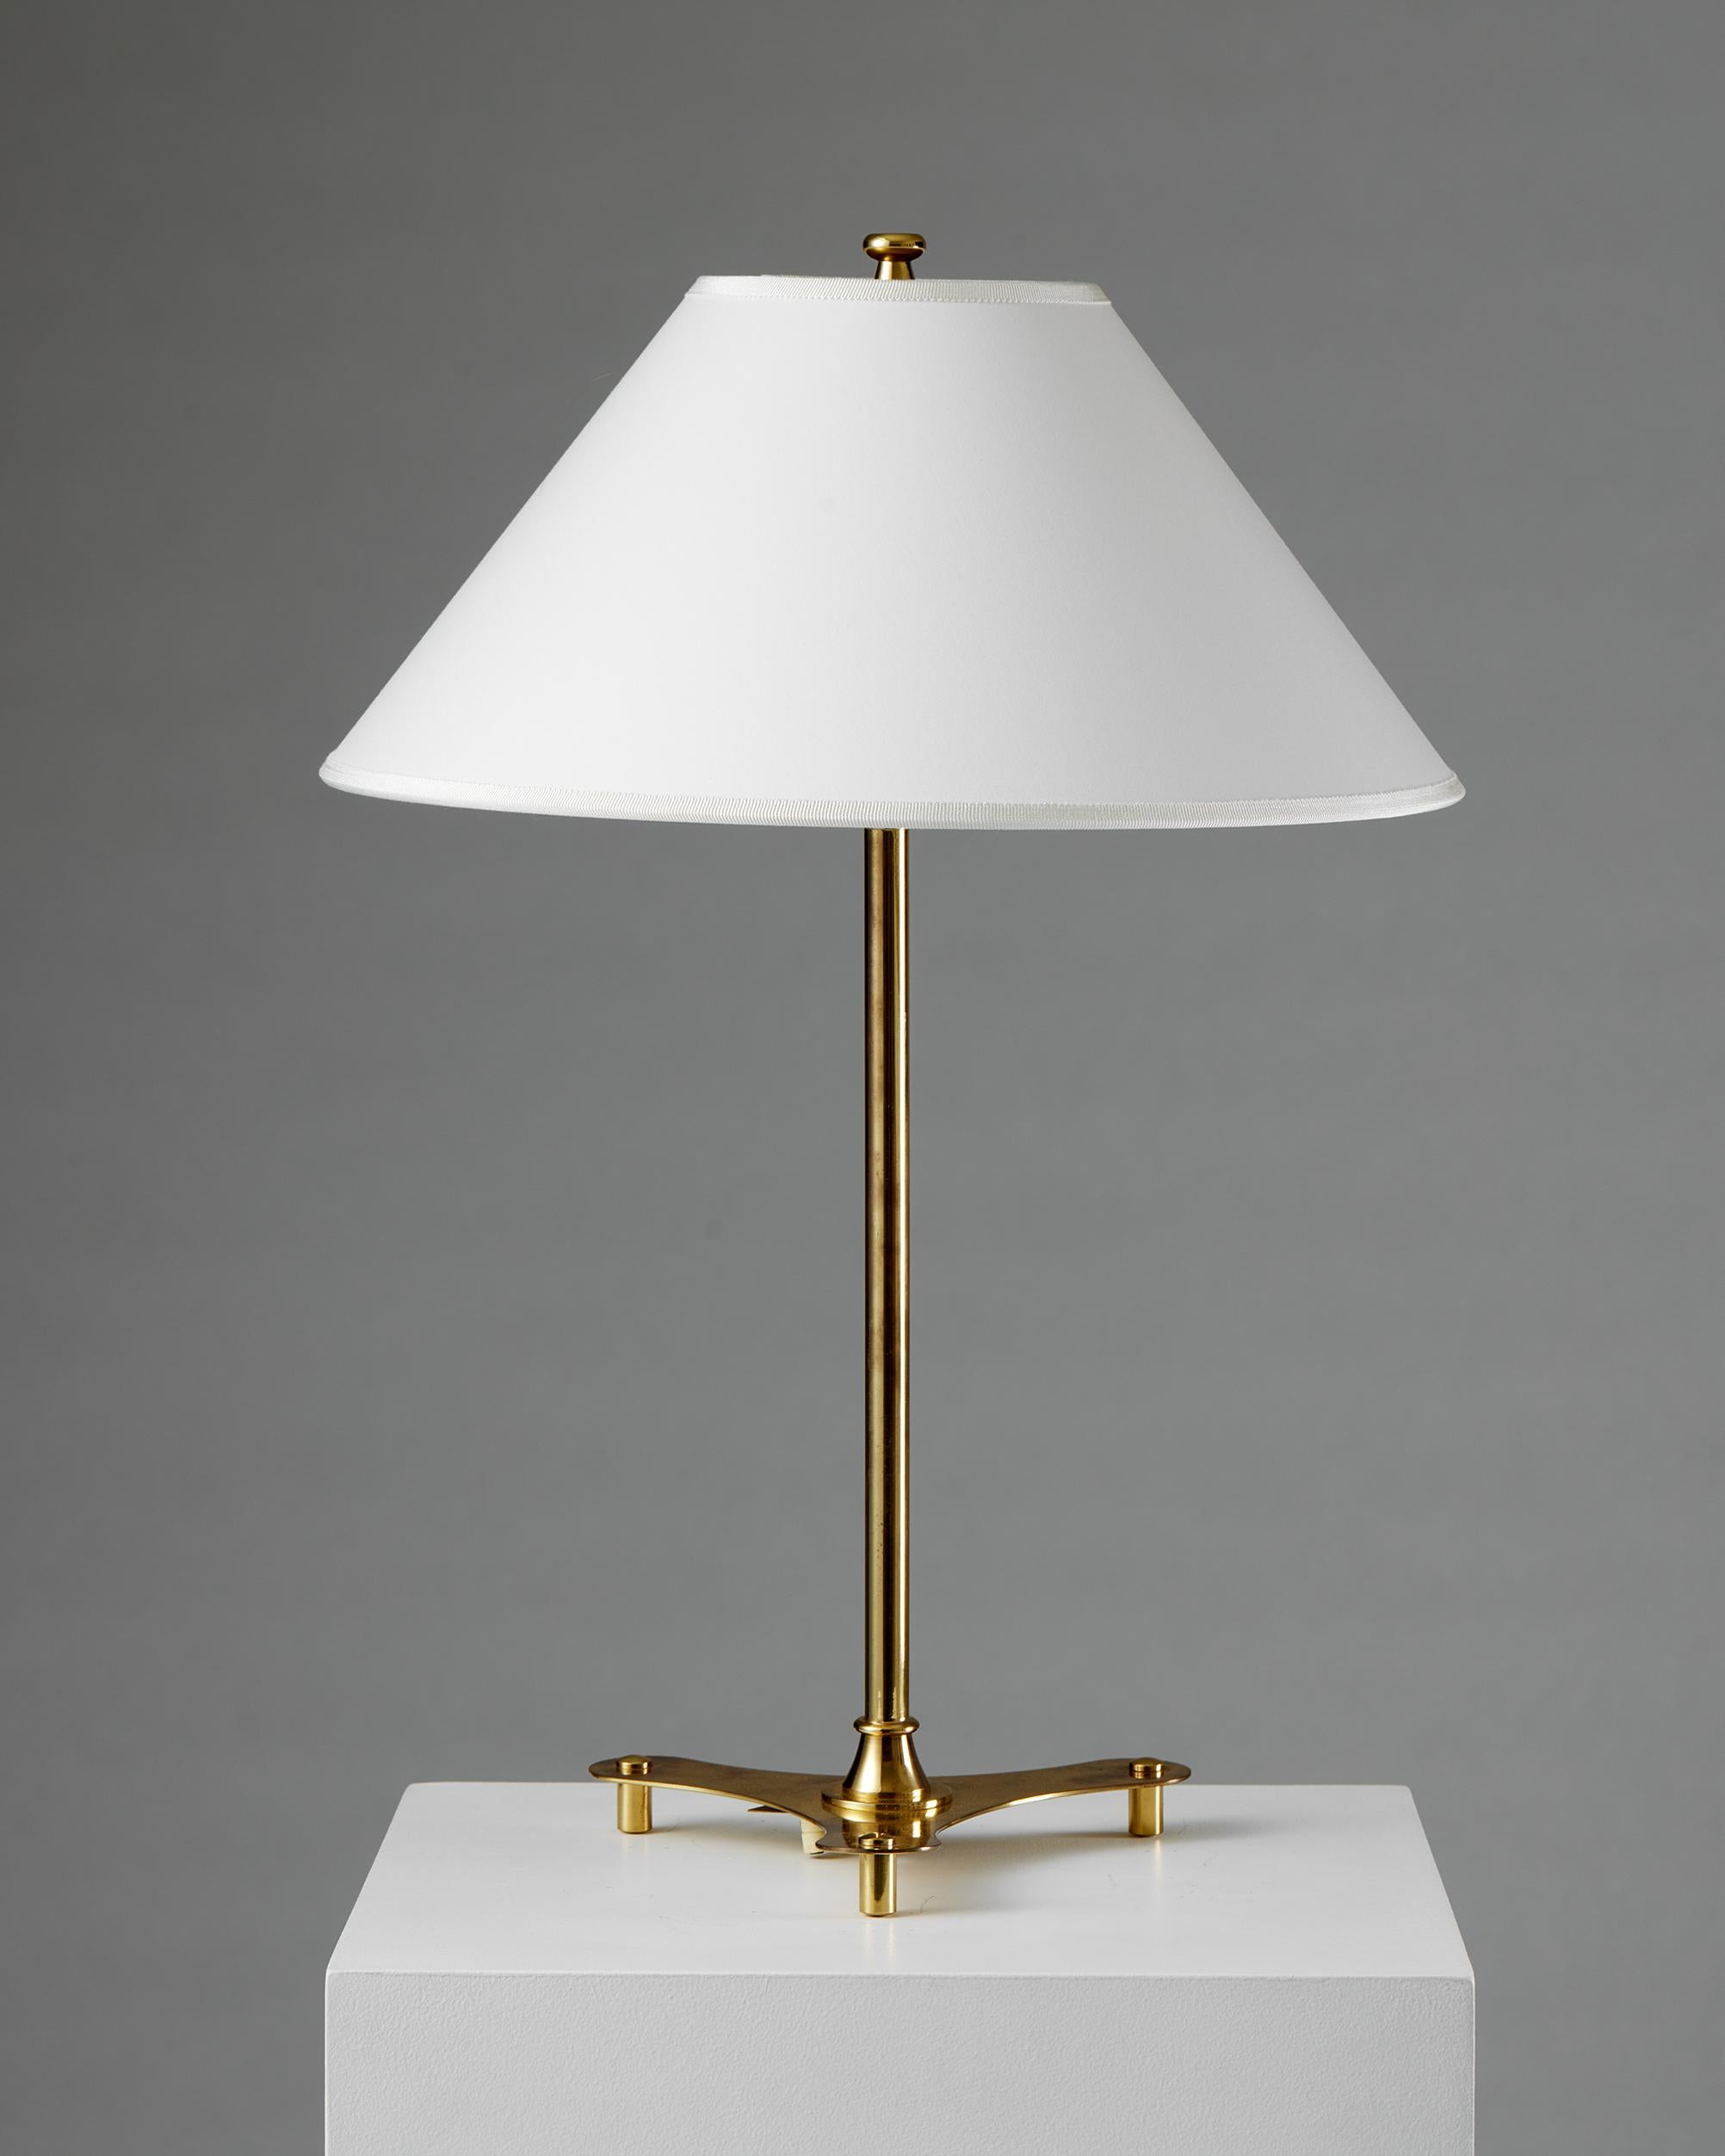 Swedish Pair of table lamps model 2552 designed by Josef Frank for Svenskt Tenn, 1950s